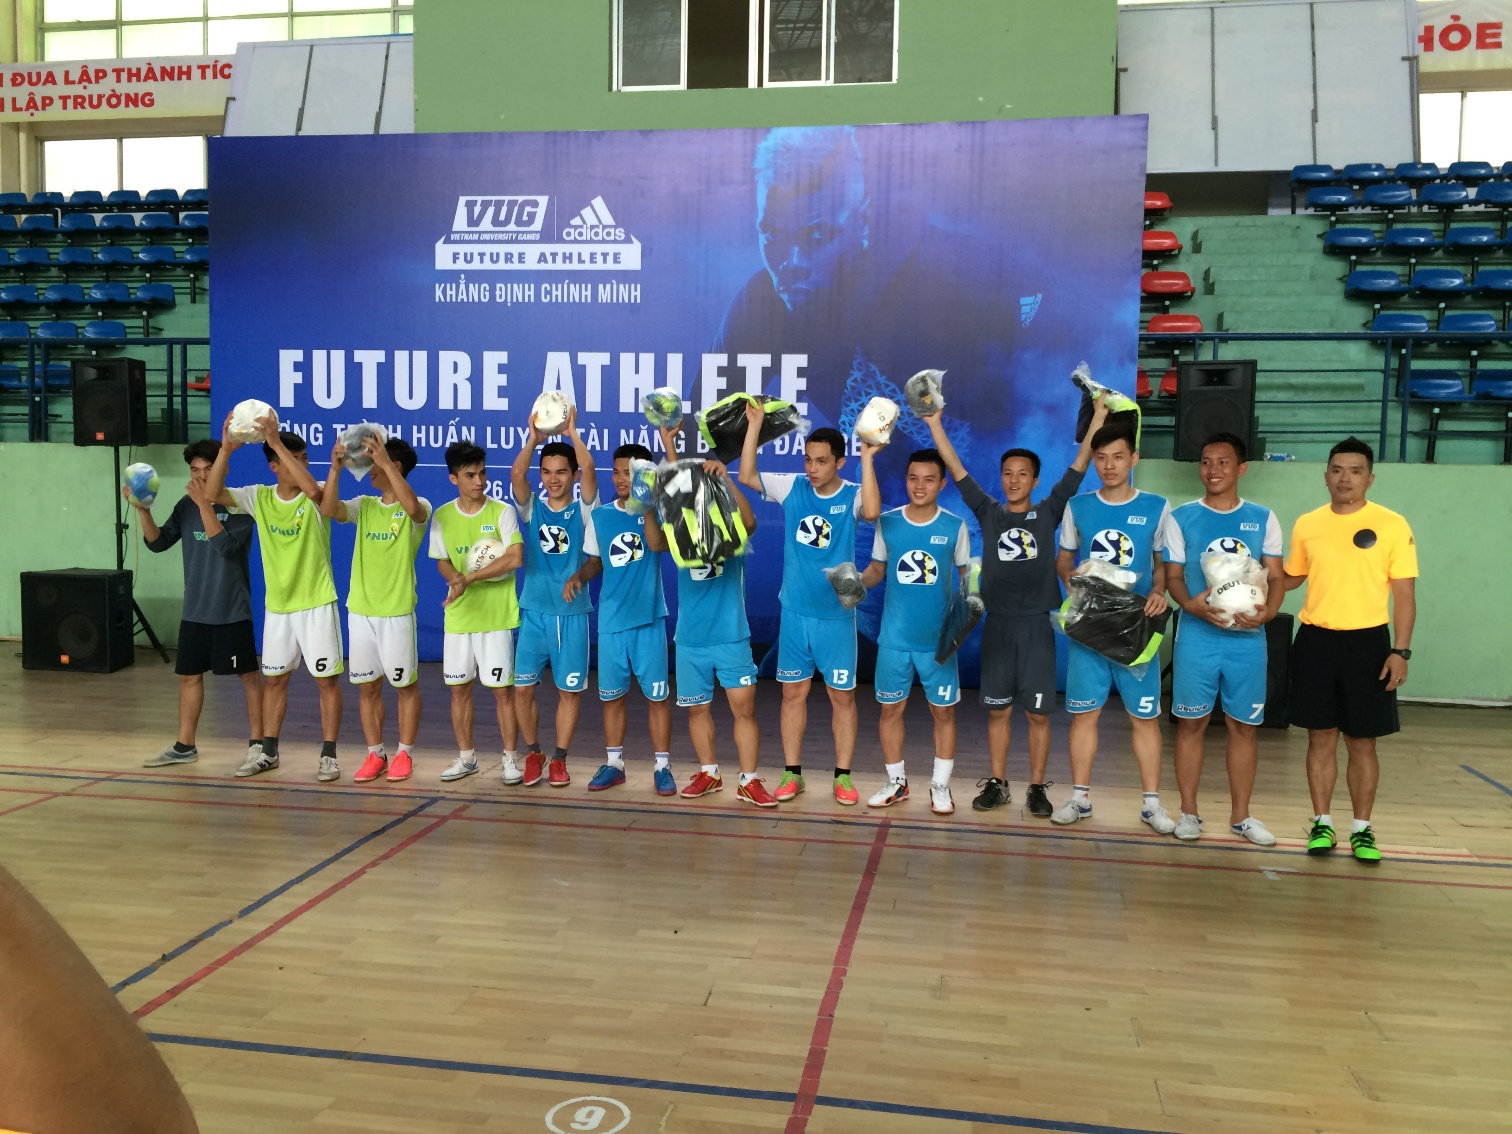 Giới trẻ hứng khởi với chương trình huấn luyện tài năng bóng đá trẻ Future Athlete - Ảnh 4.